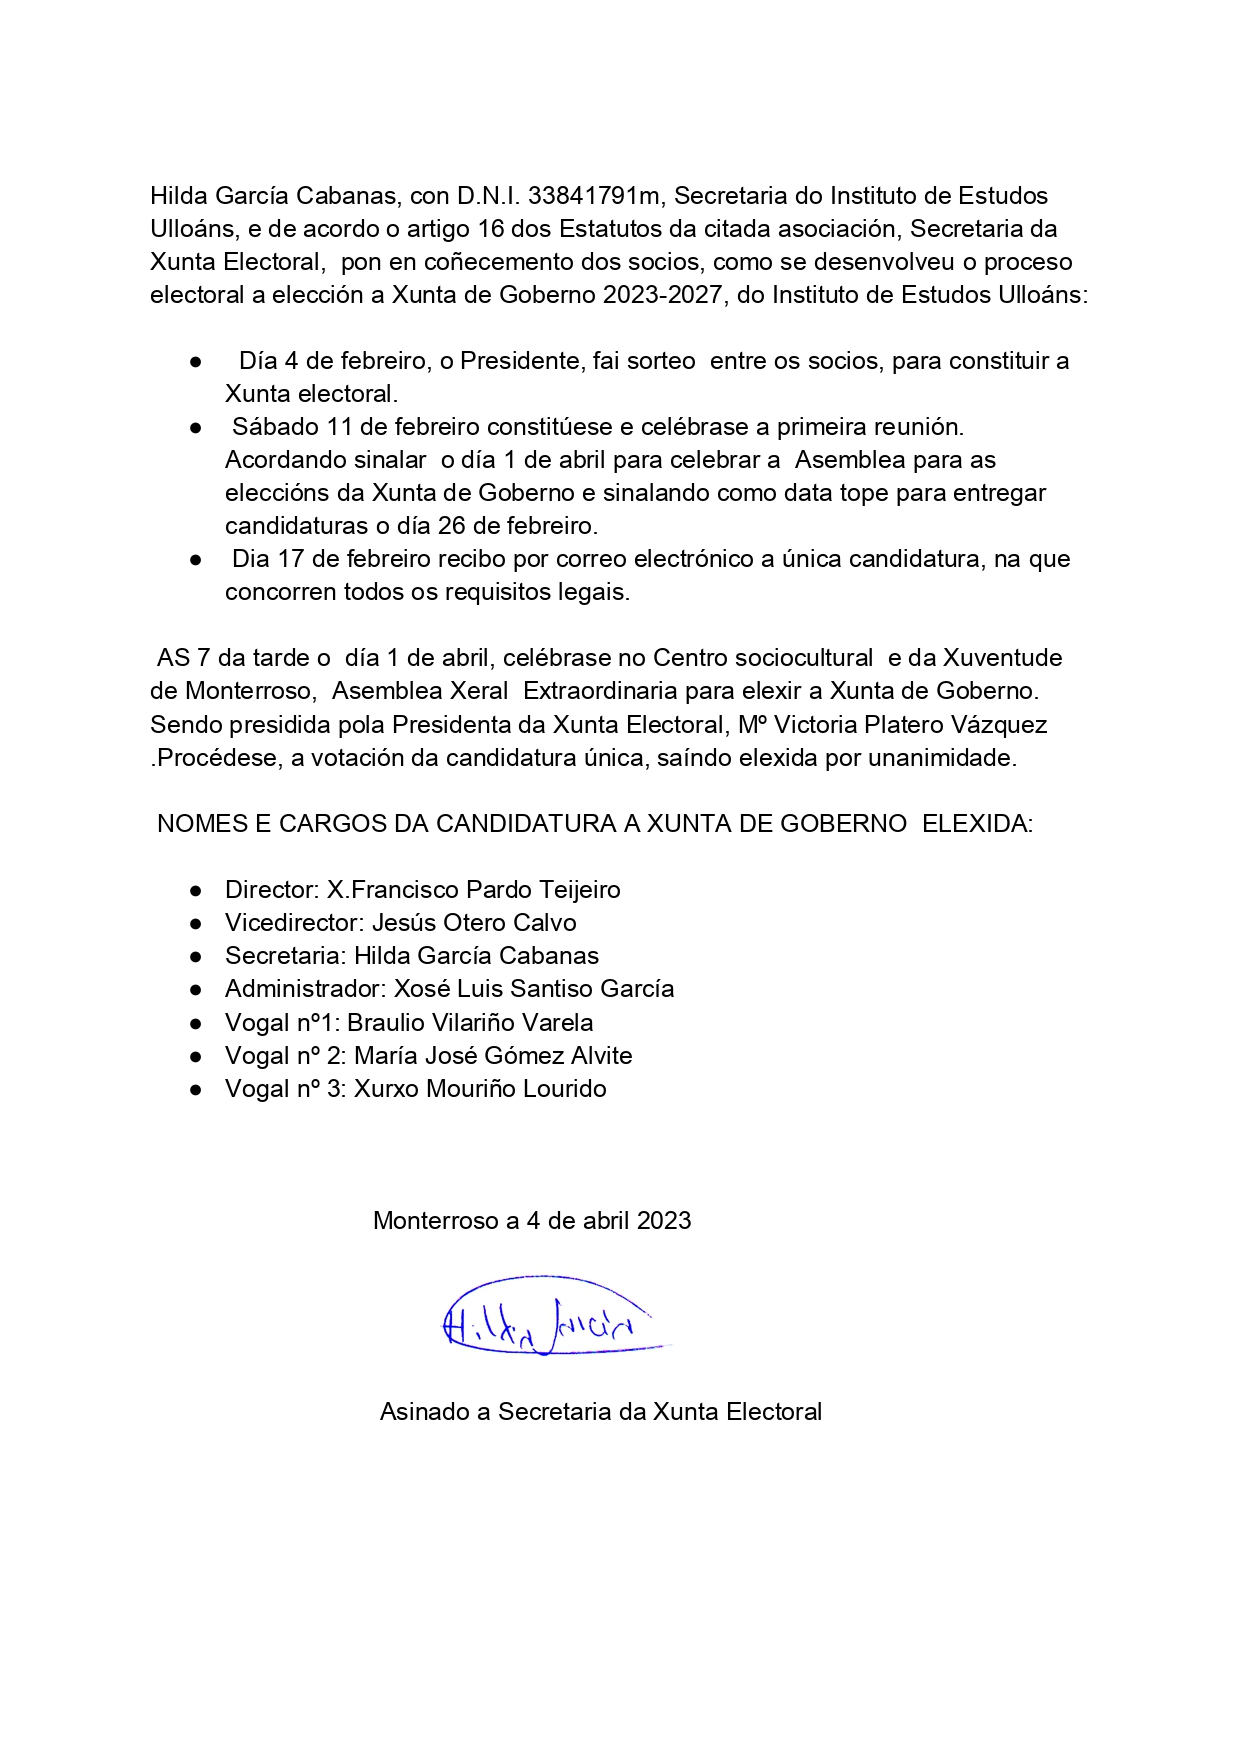 Notificación resultado das eleccións Xunta de Goberno IEU 2023_page-0001